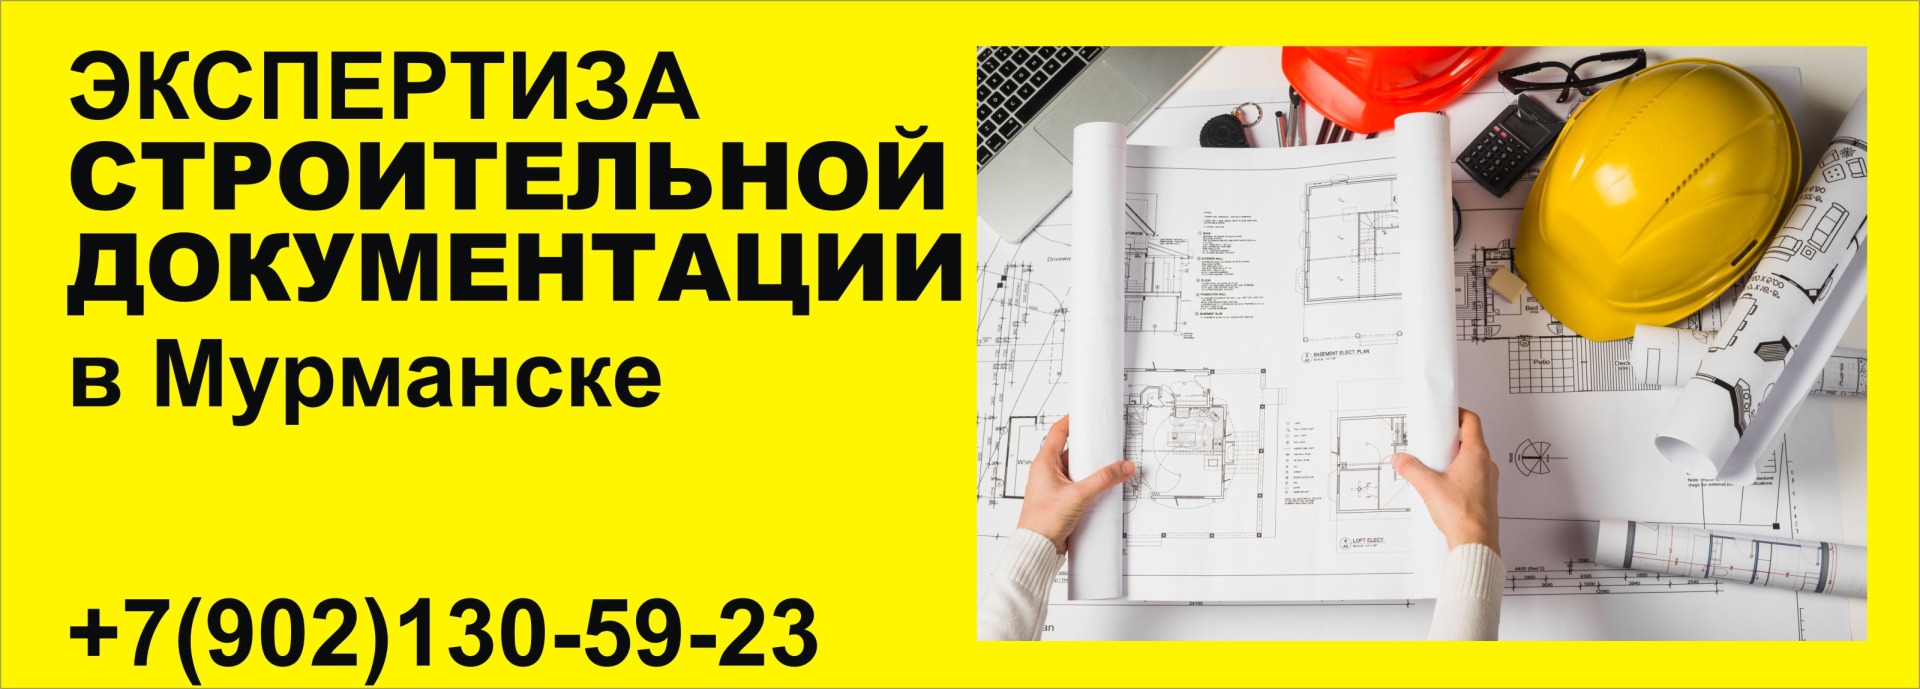 экспертиза строительной документации чертежей в Мурманске для суда и внесудебные